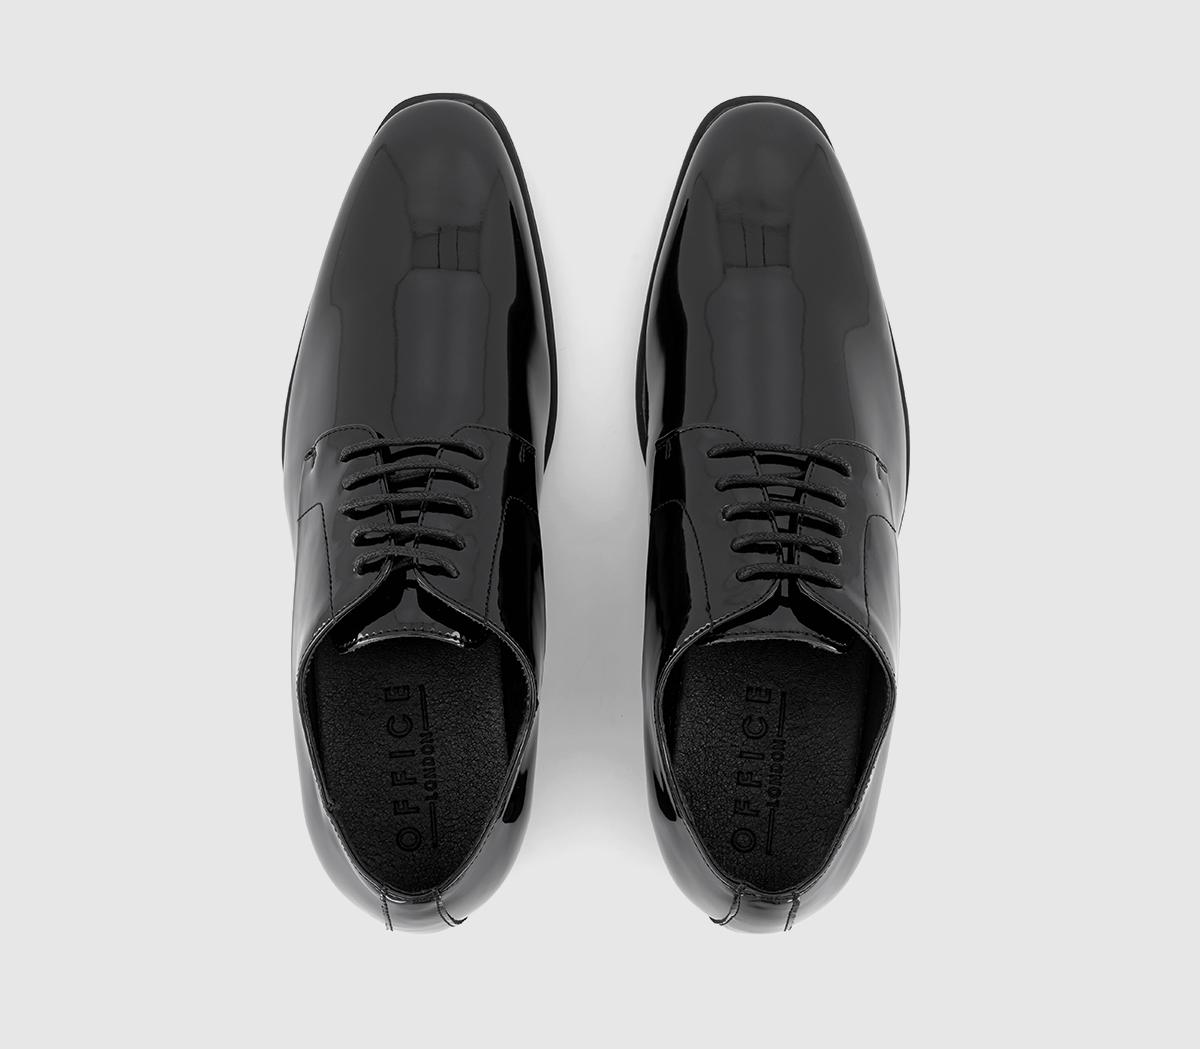 OFFICE Moreland Patent Derby Shoes Black Patent - Men’s Smart Shoes